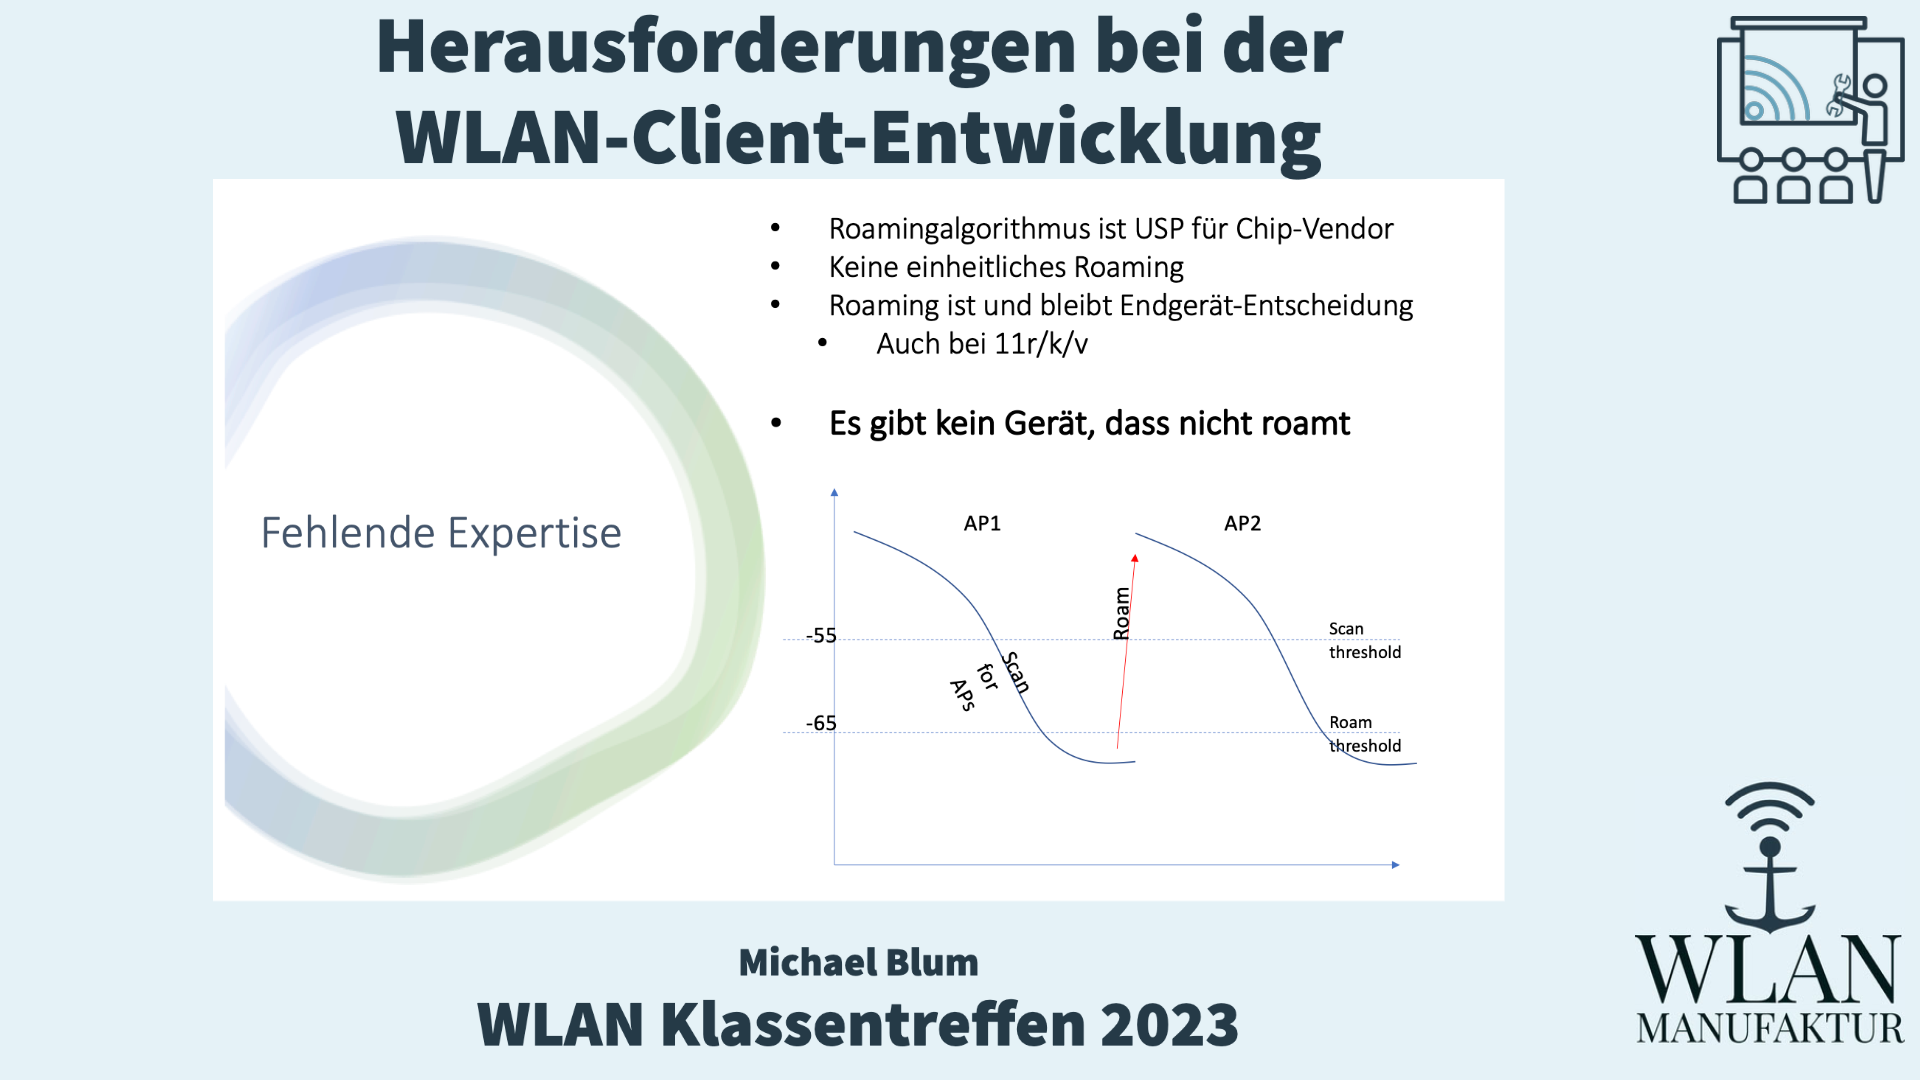 Video laden: Aufzeichnung der Präsentation vom WLAN Klassentreffen - Herausforderungen bei der WLAN-Client-Entwicklung